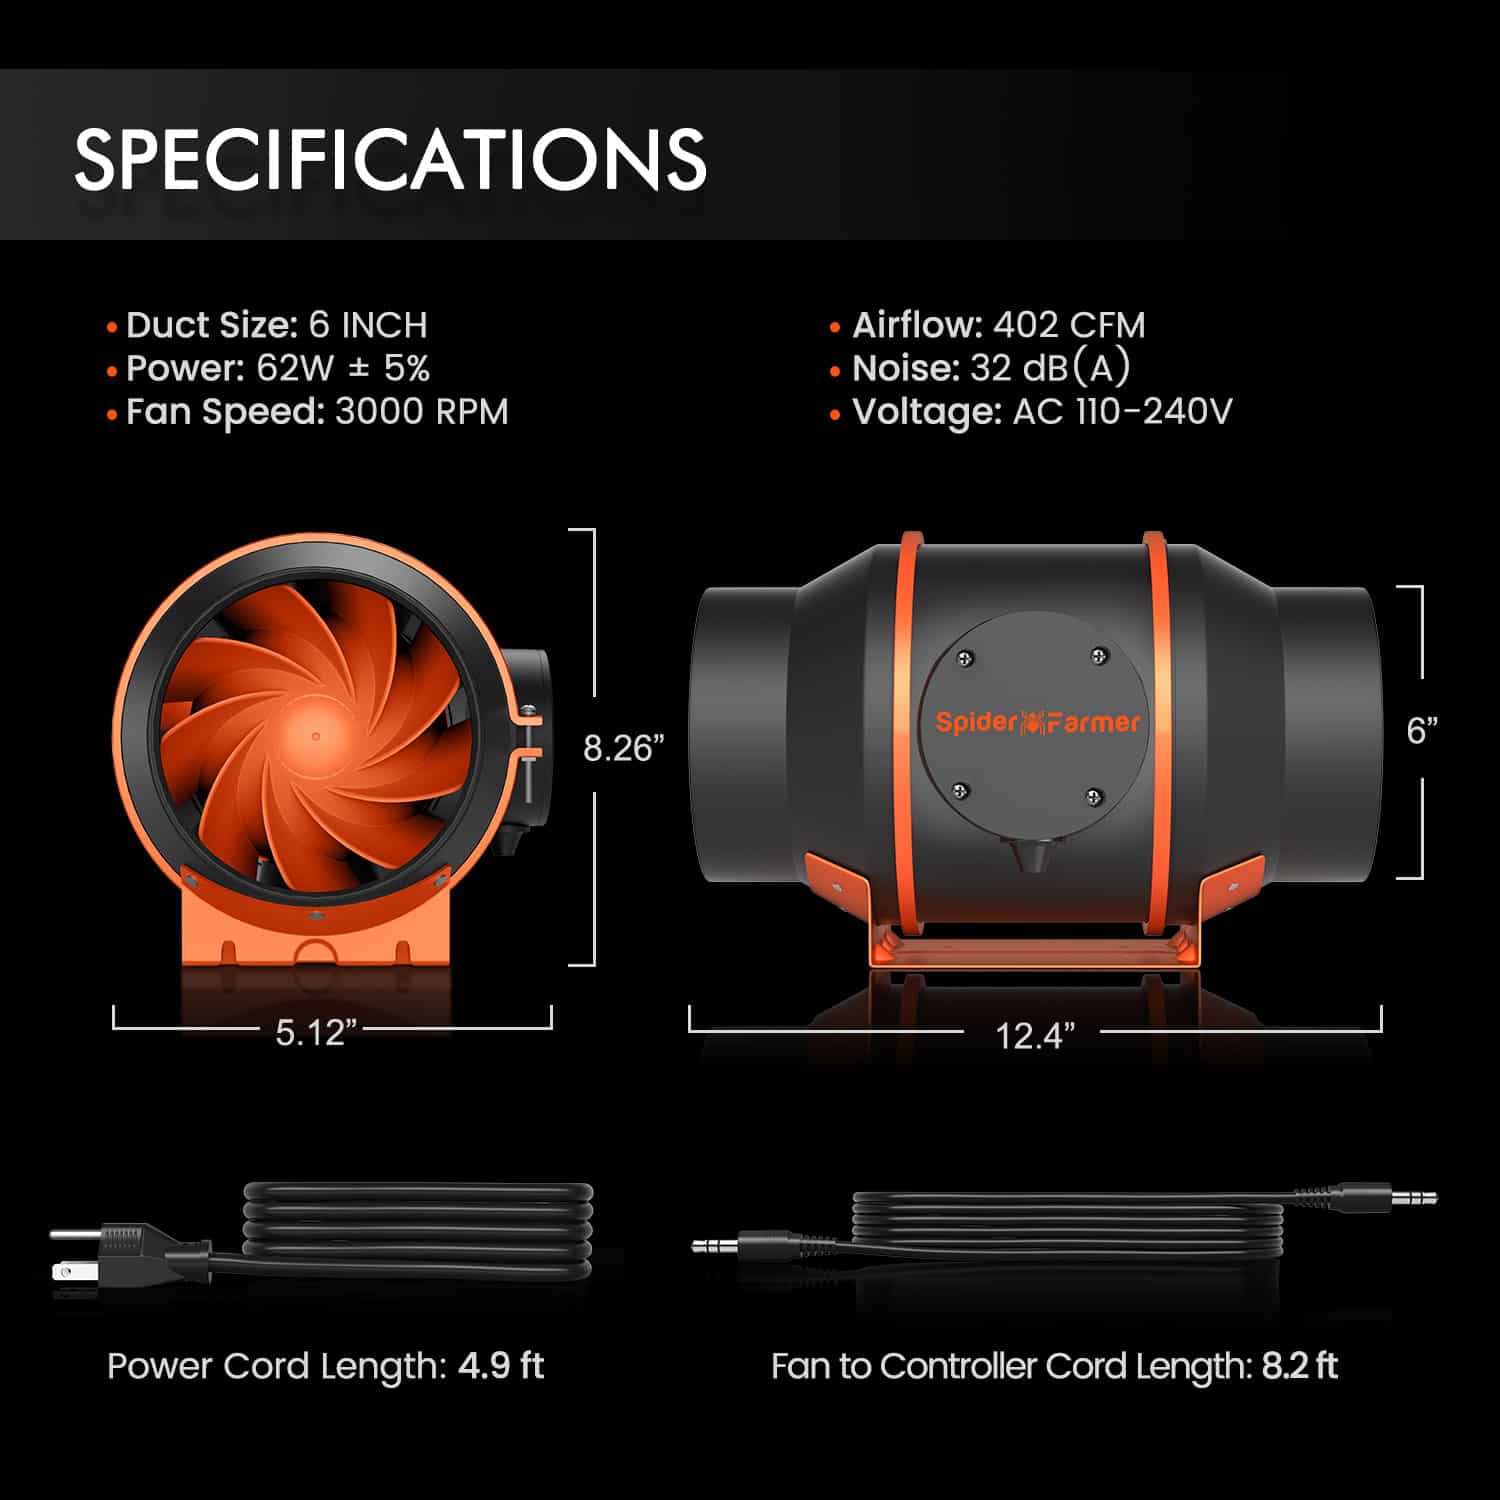 Spider Farmer® Ventilateur de conduit en ligne silencieux de 6 pouces avec régulateur température-humidité